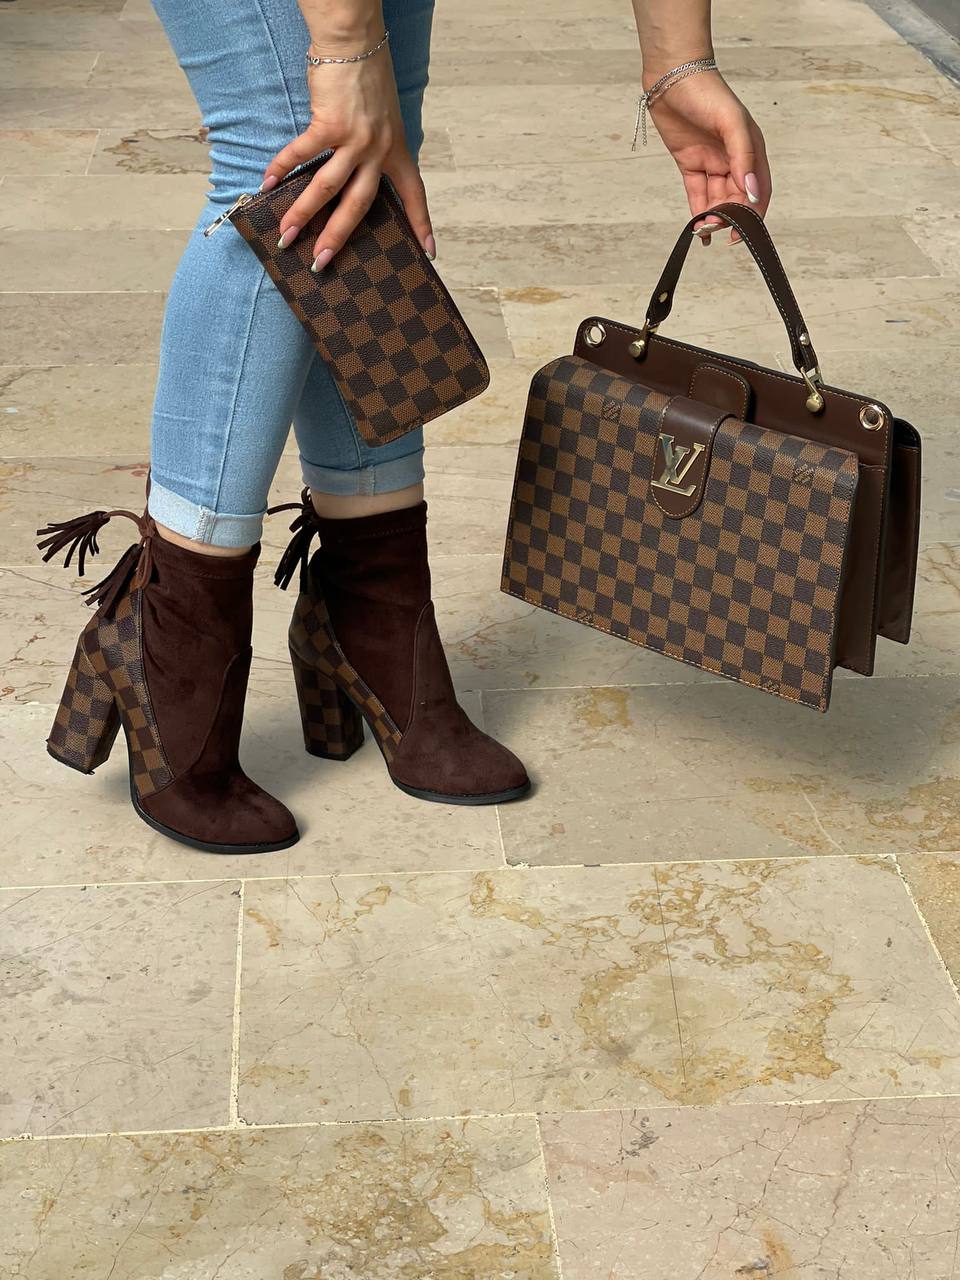 Louis Vuitton 3 Pcs Damier Ebene Set – Bag, Boots and Wallet